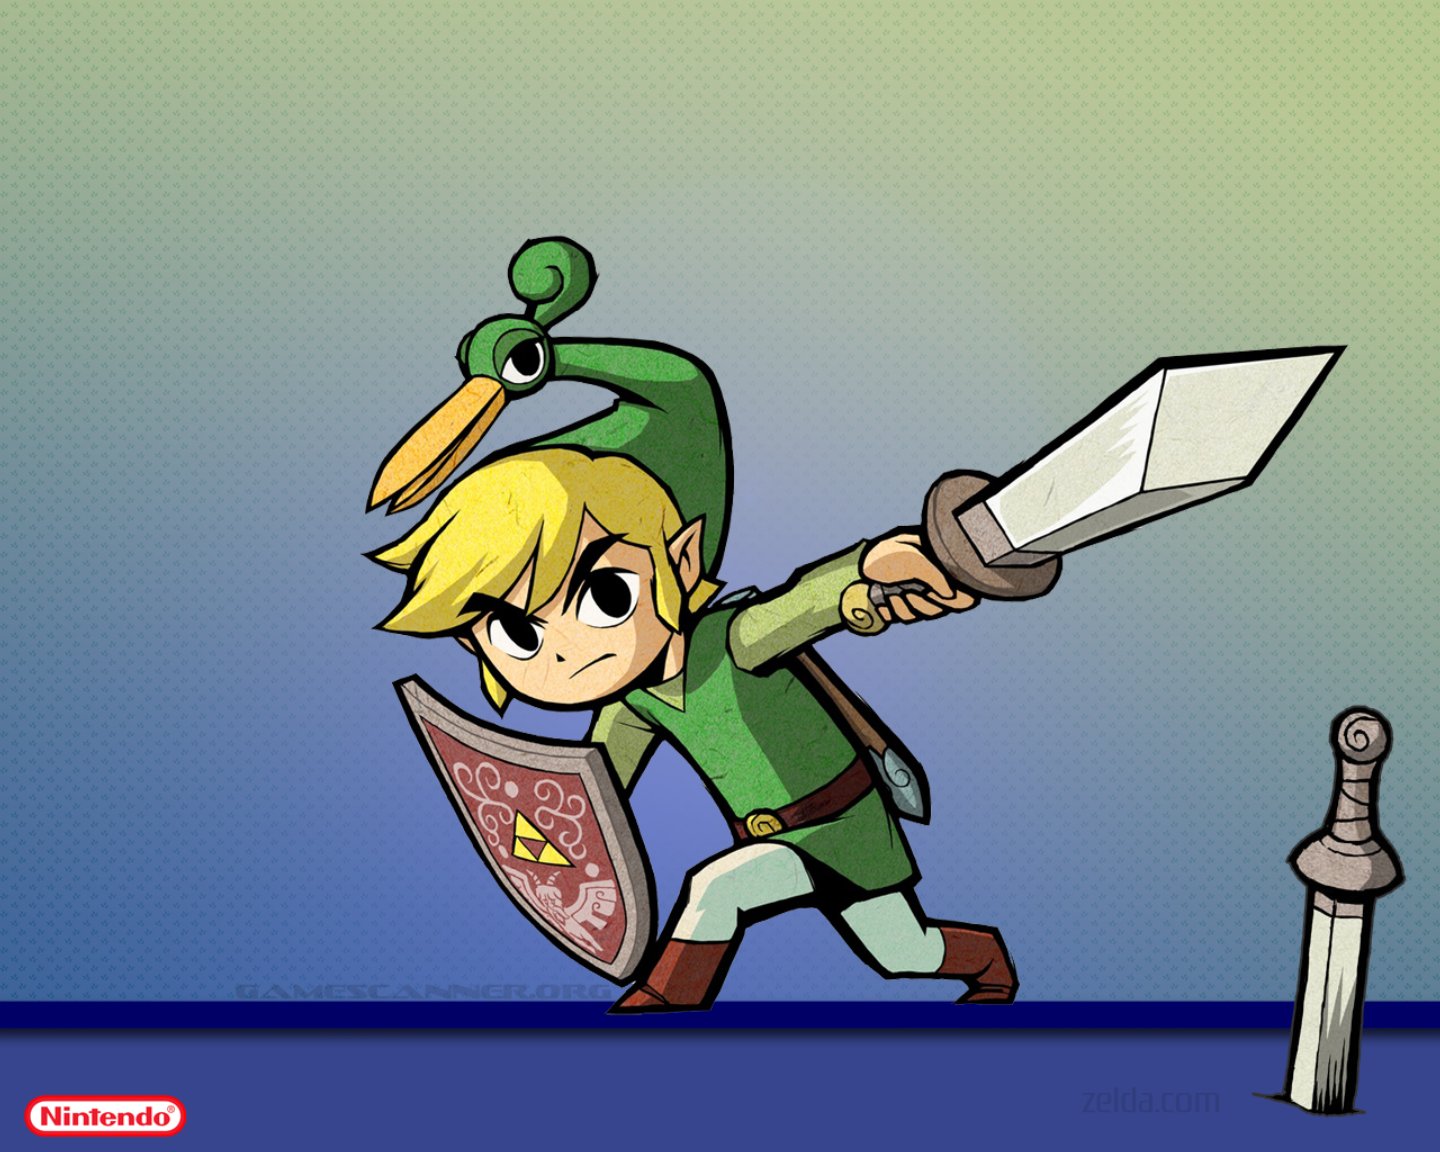 The Legend Of Zelda: The Minish Cap Wallpapers